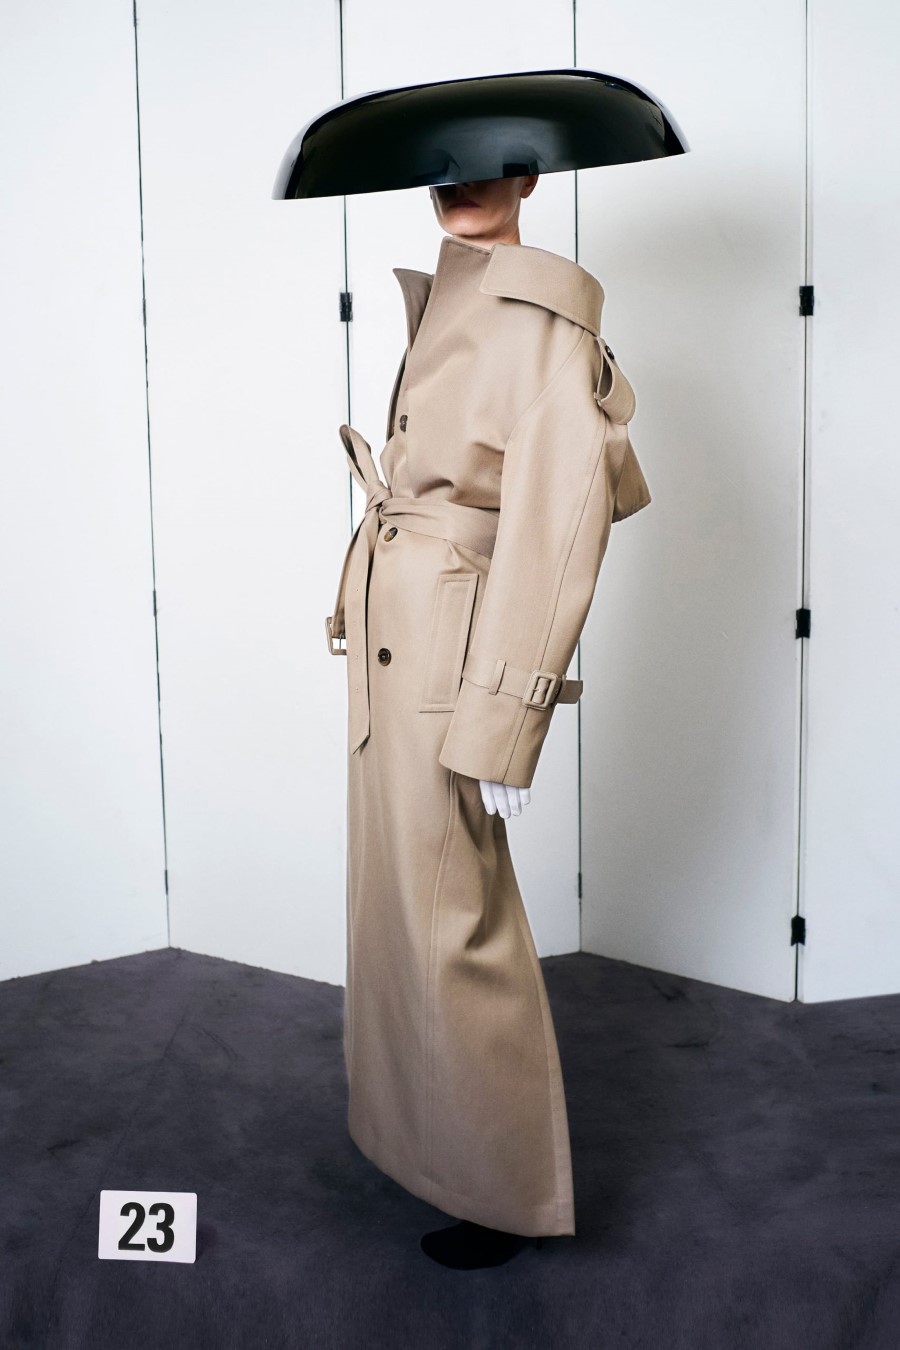 Balenciaga Haute Couture Fall Winter 2021